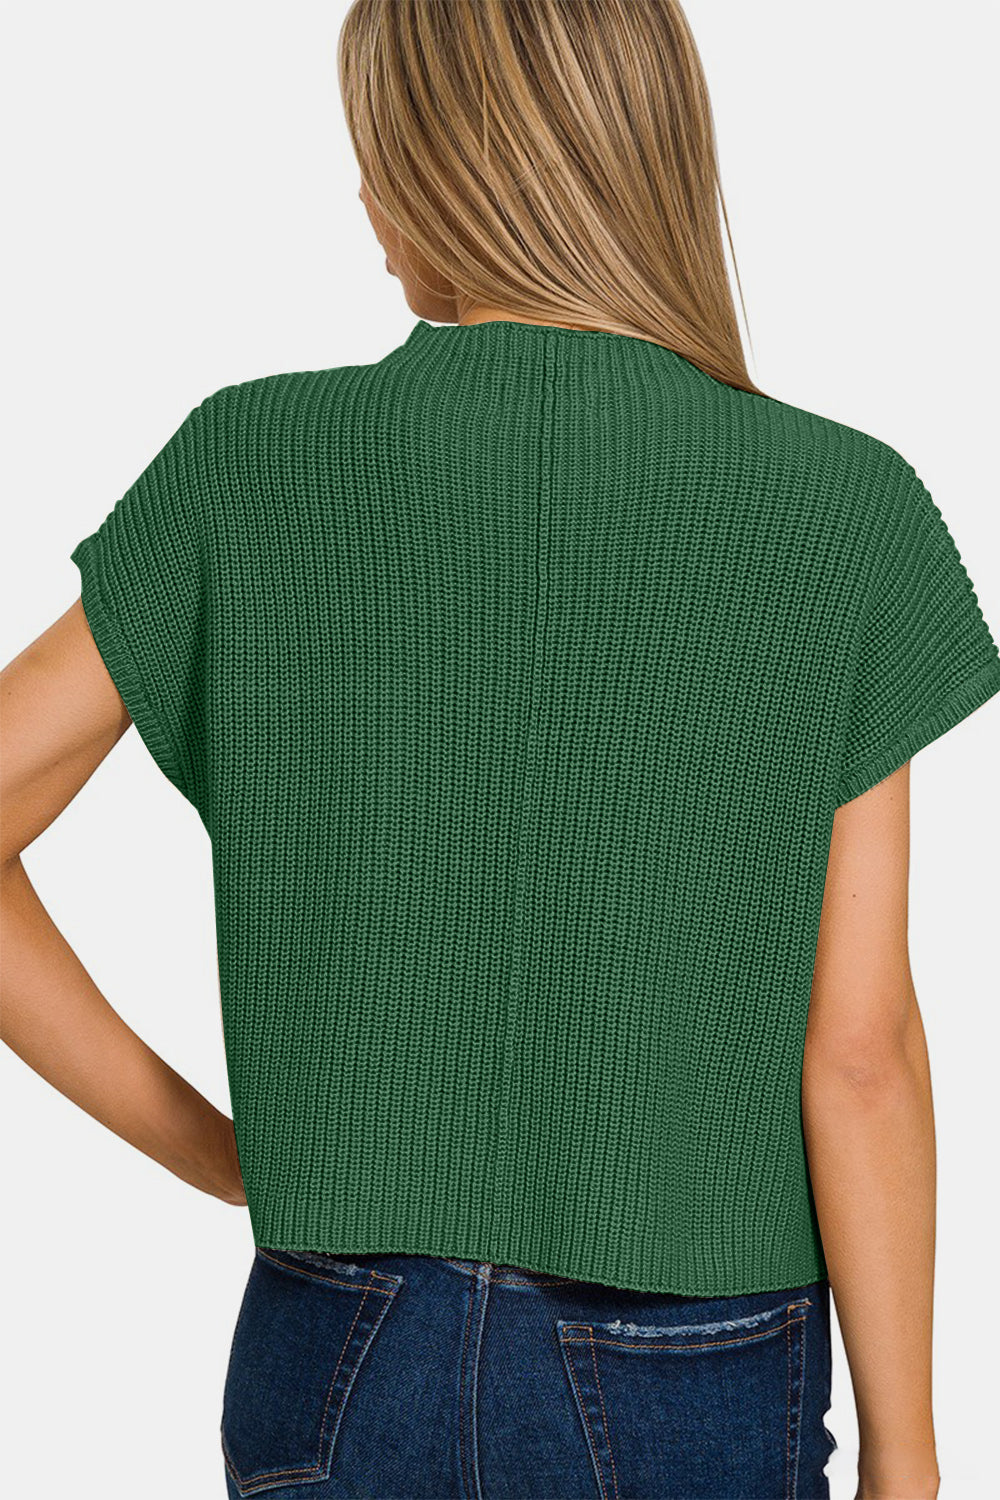 TEEK - Green Mock Neck Short Sleeve Cropped Sweater SWEATER TEEK Trend   